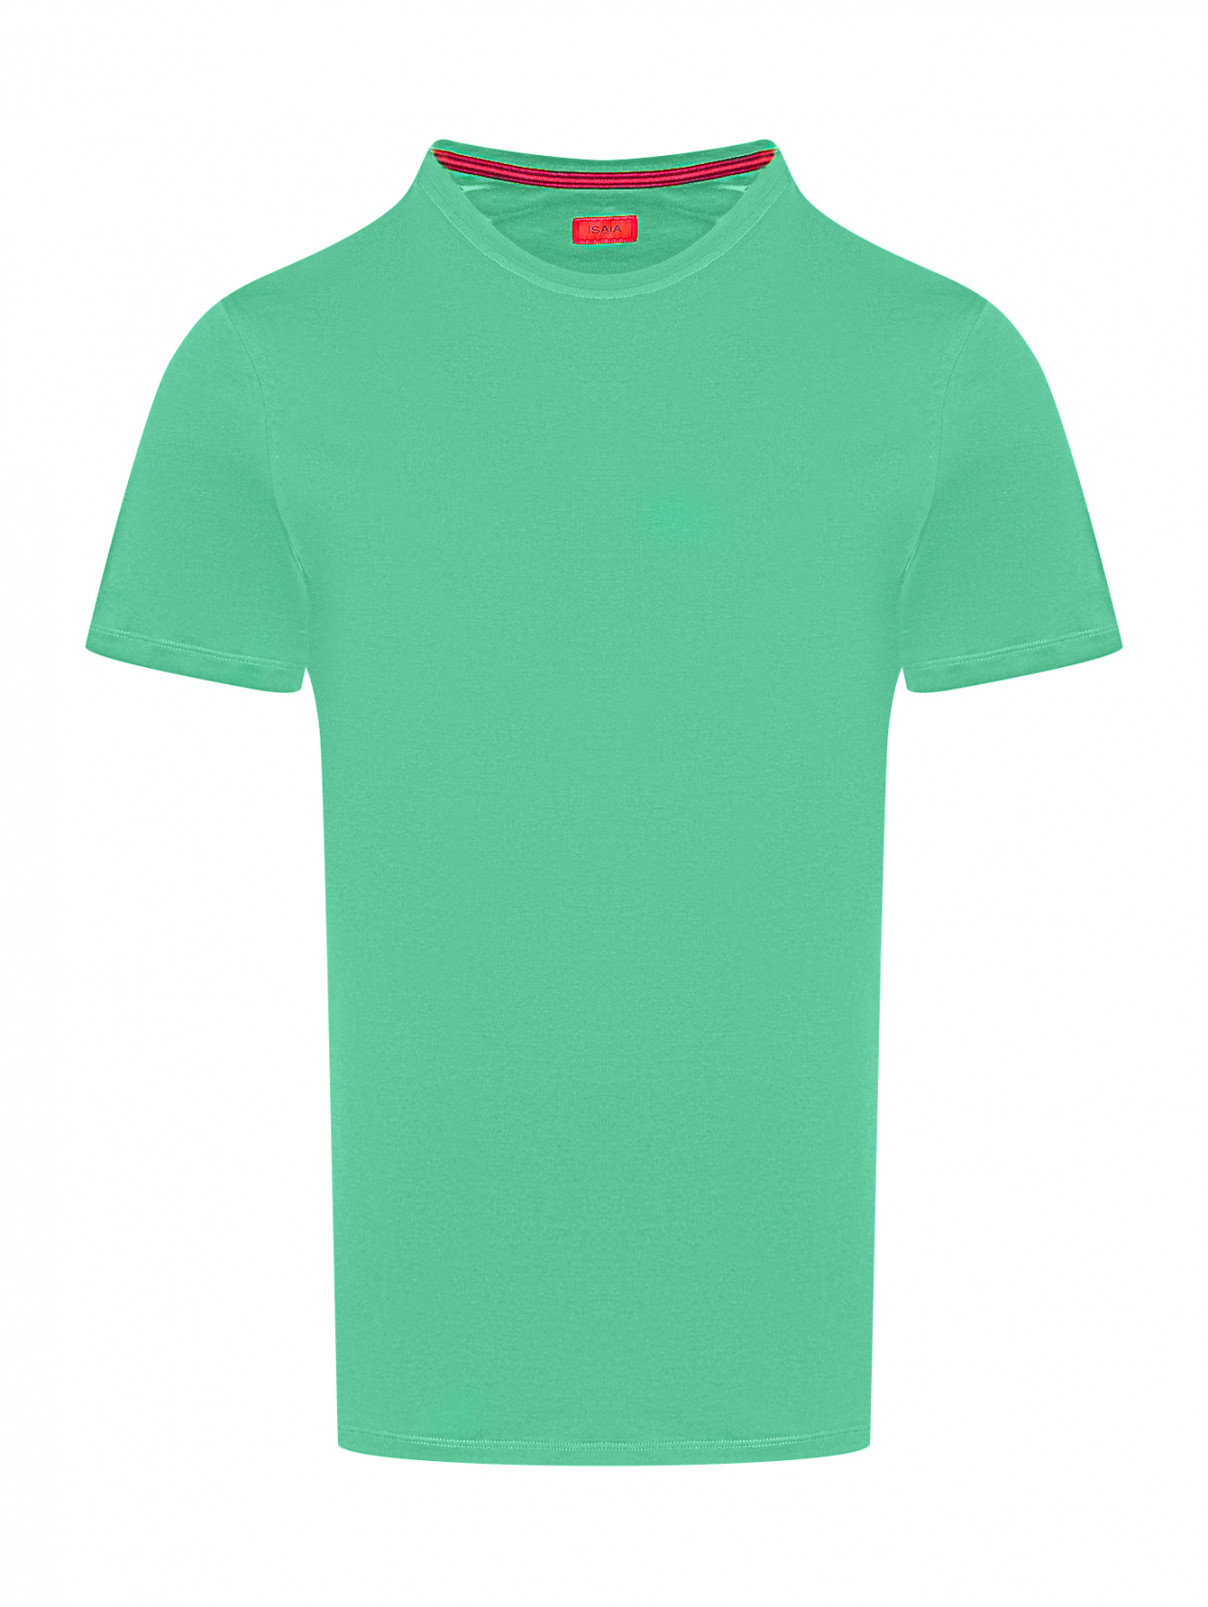 Базовая футболка из хлопка Isaia  –  Общий вид  – Цвет:  Зеленый